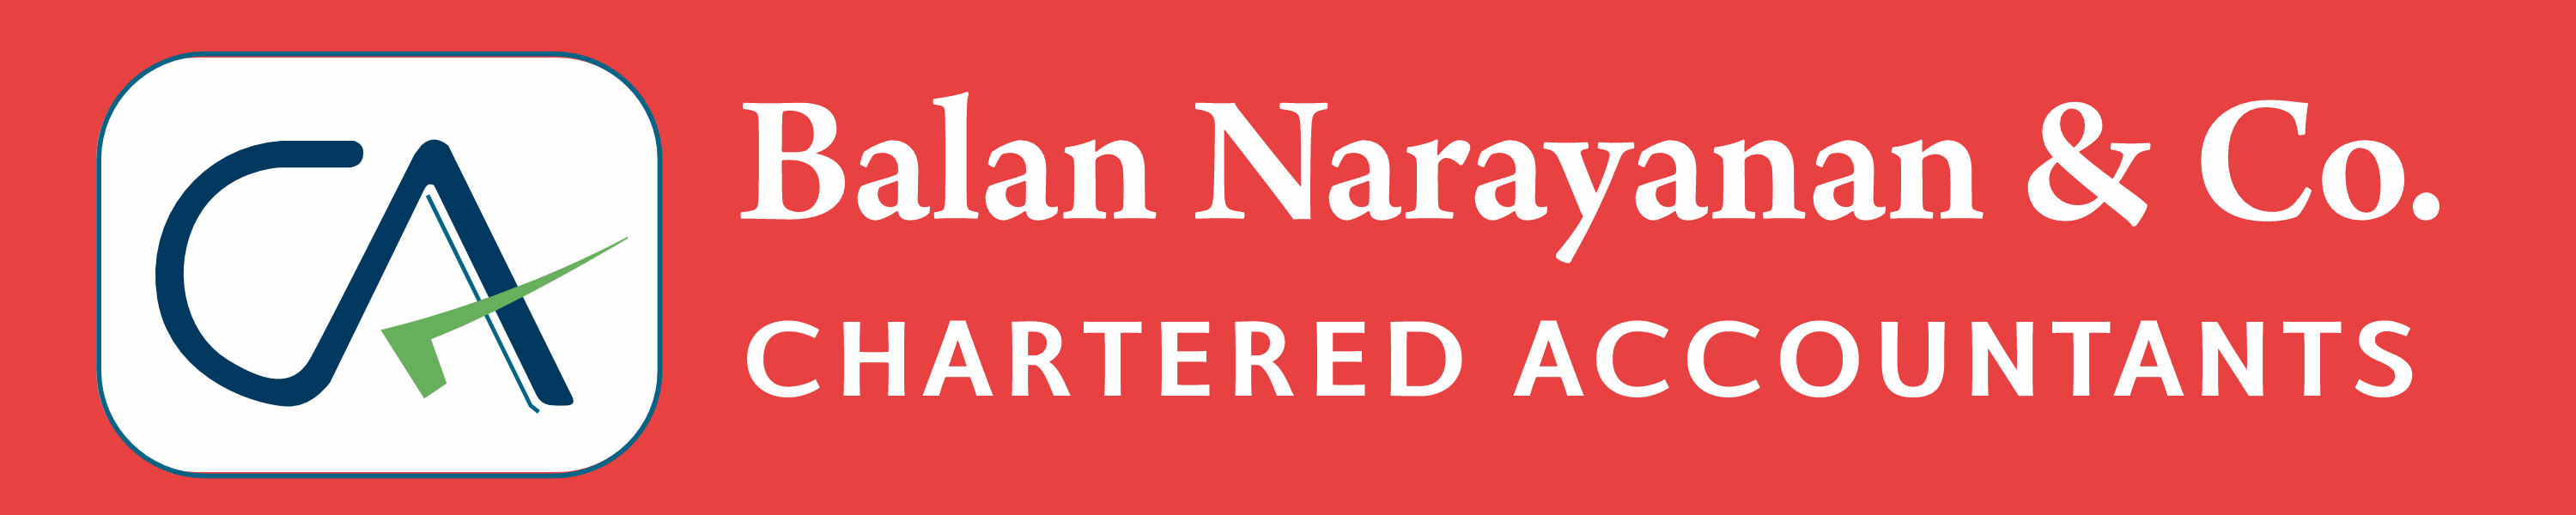 Balan Narayanan & Co